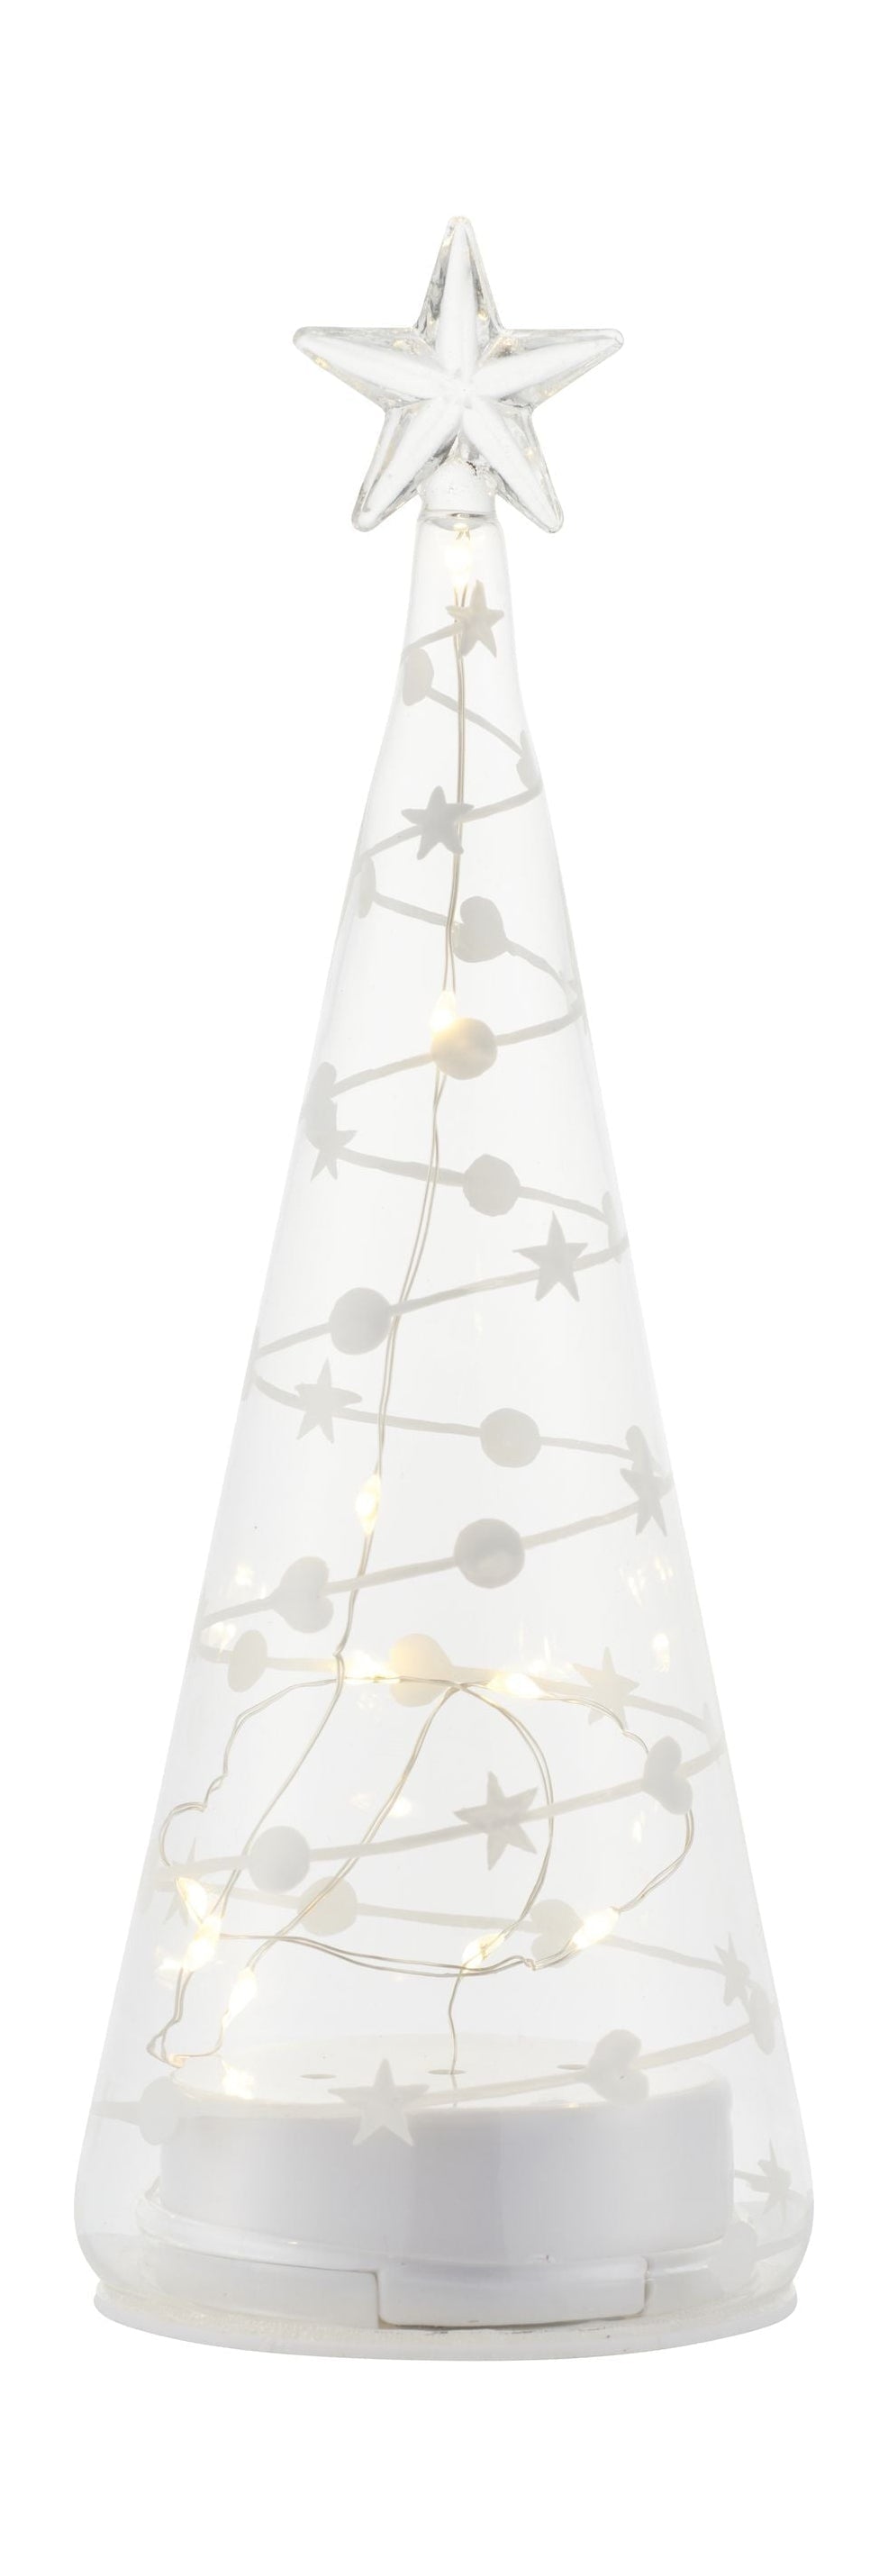 Sirius Sweet Christmas Tree, H22 cm, bianco/chiaro